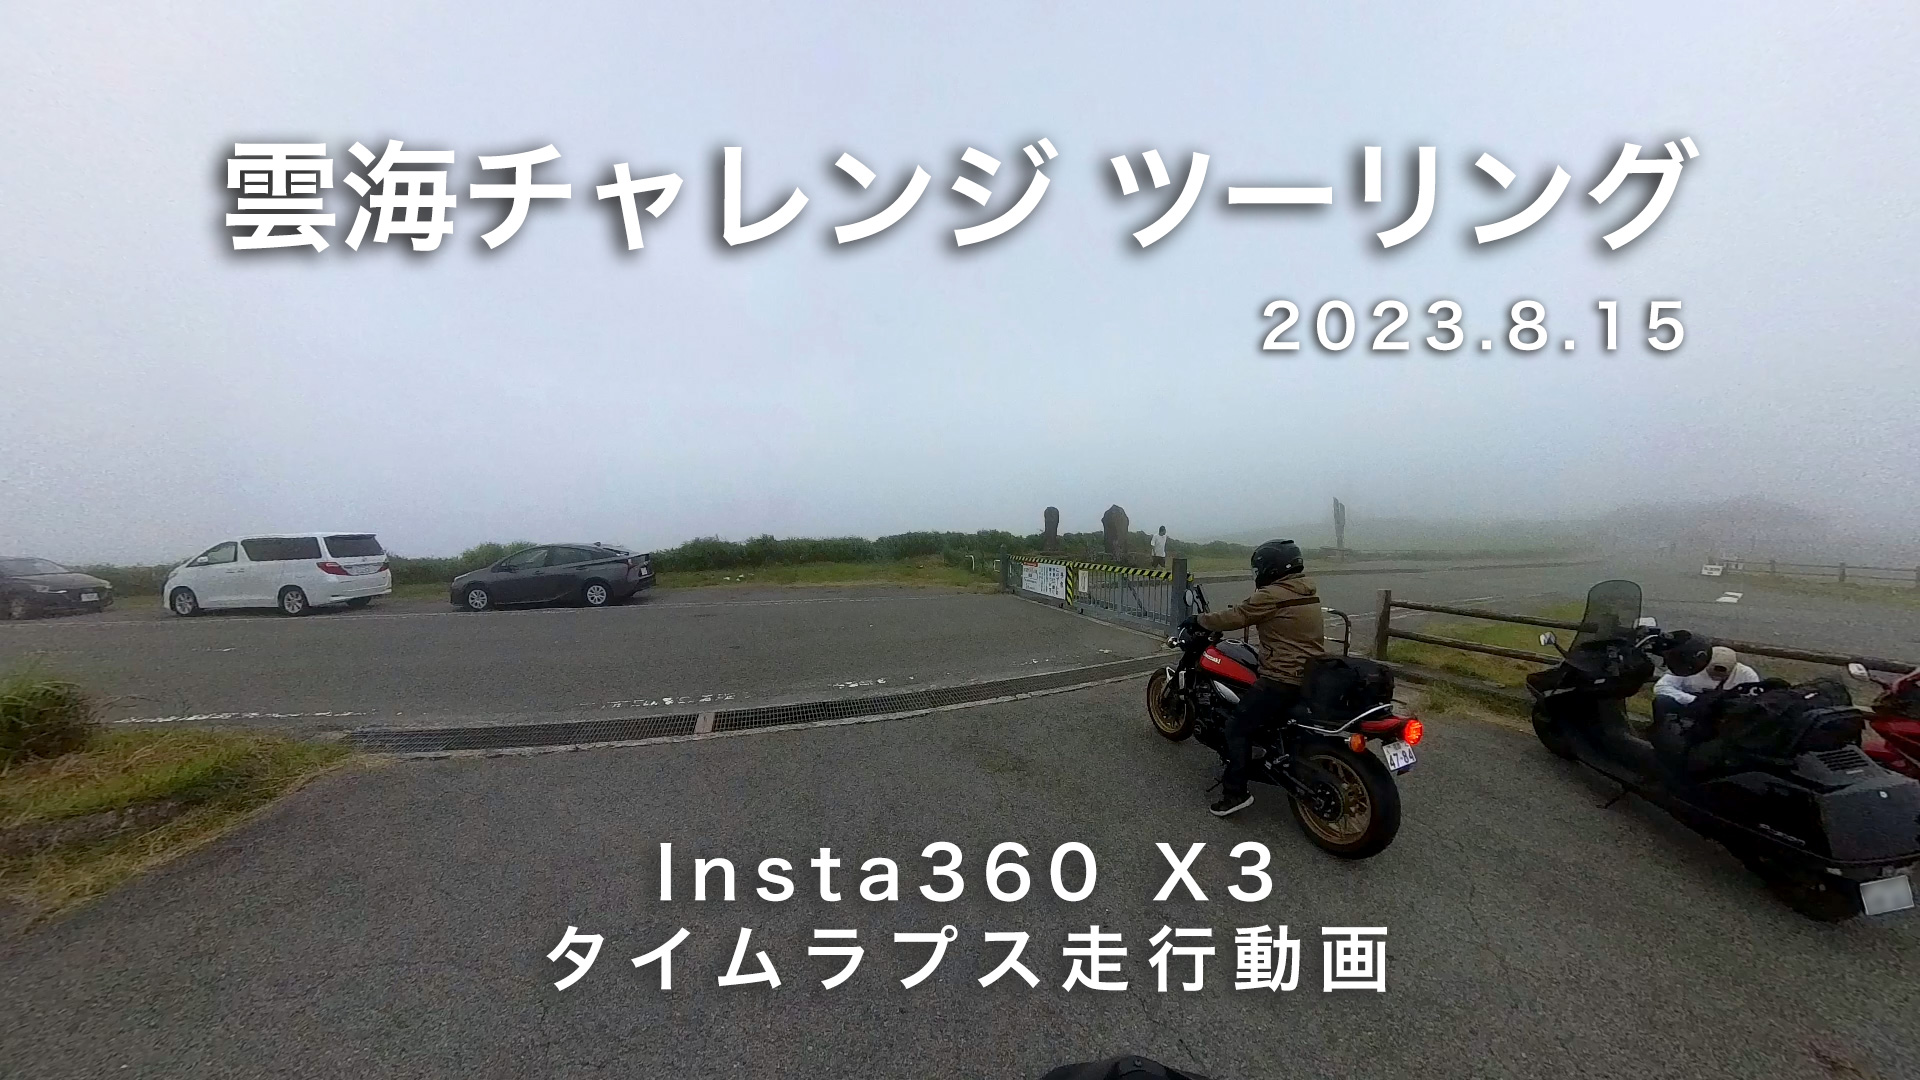 雲海チャレンジ 阿蘇 - 日田 周辺ツーリング ( Insta360 X3 タイムラプス 走行動画 車載カメラ　睡眠導入、作業用BGV )